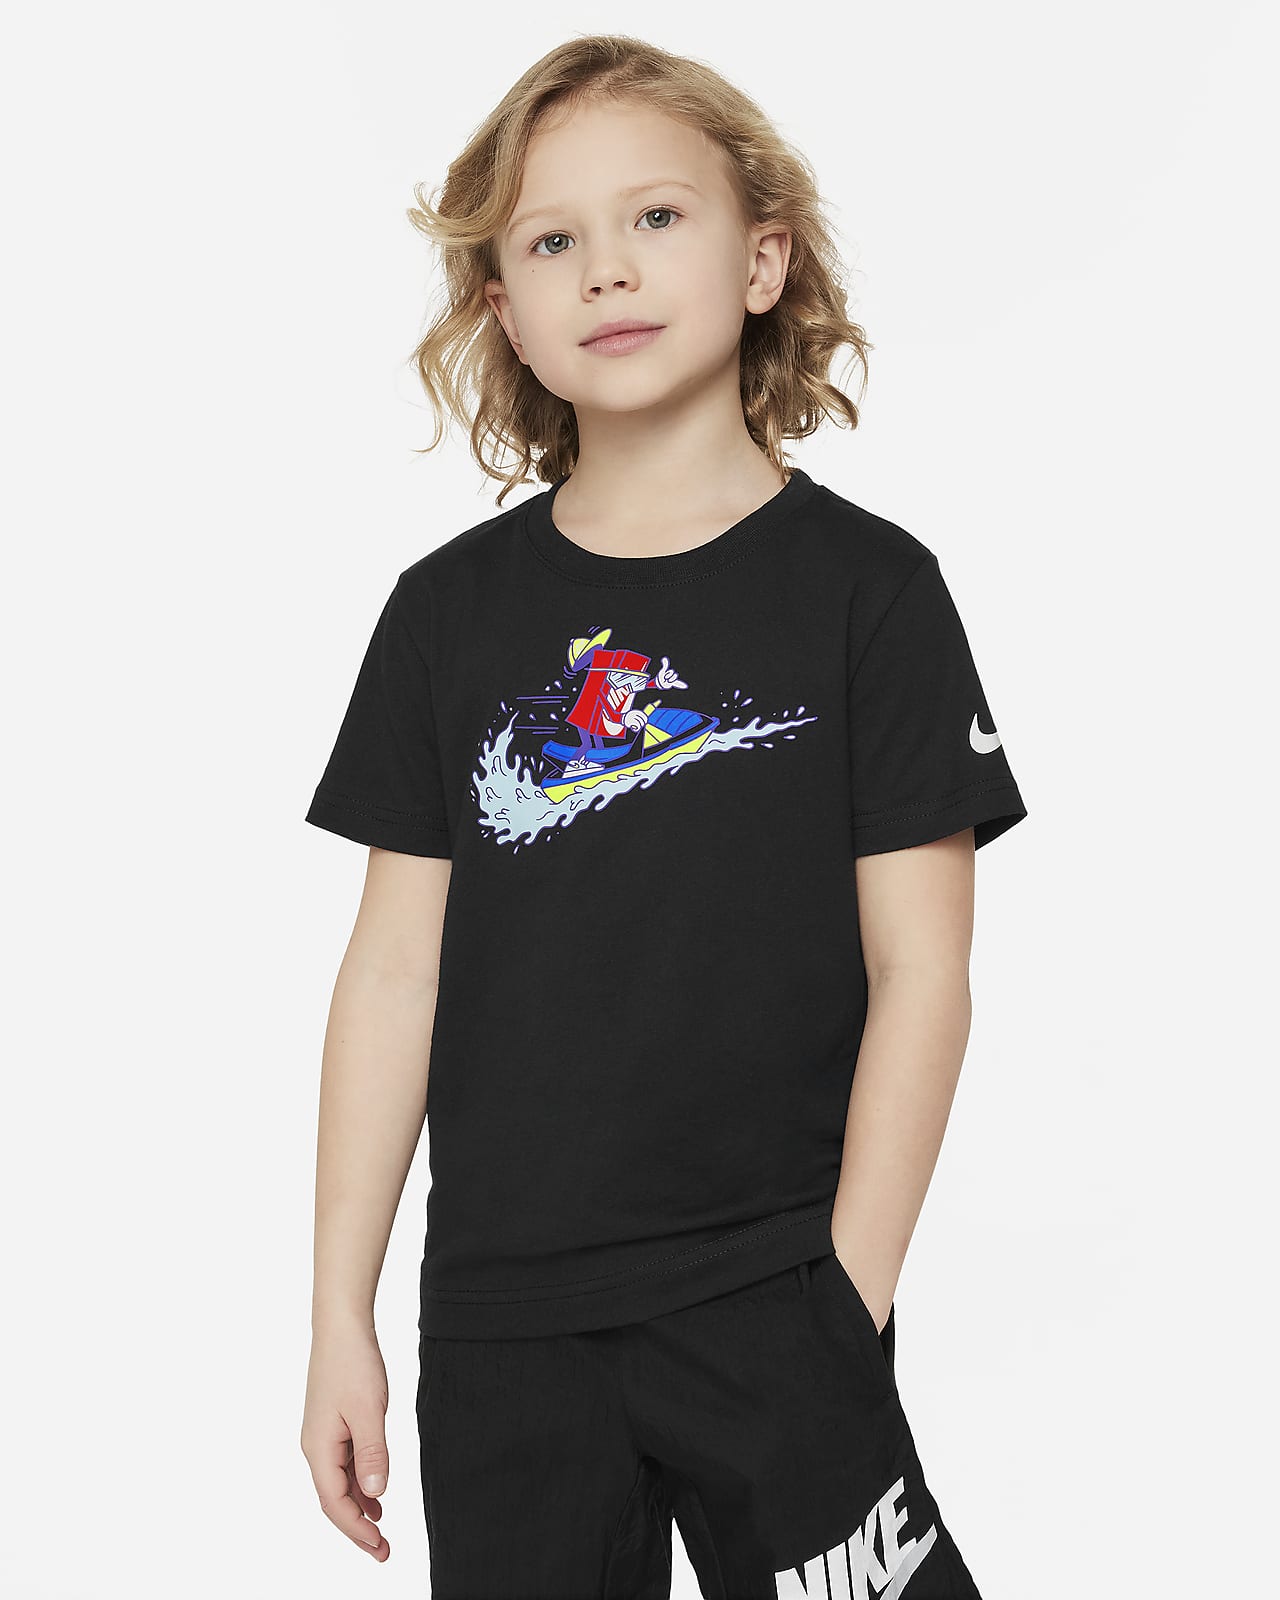 Nike szögletes fazonú jetskis póló kisgyerekeknek